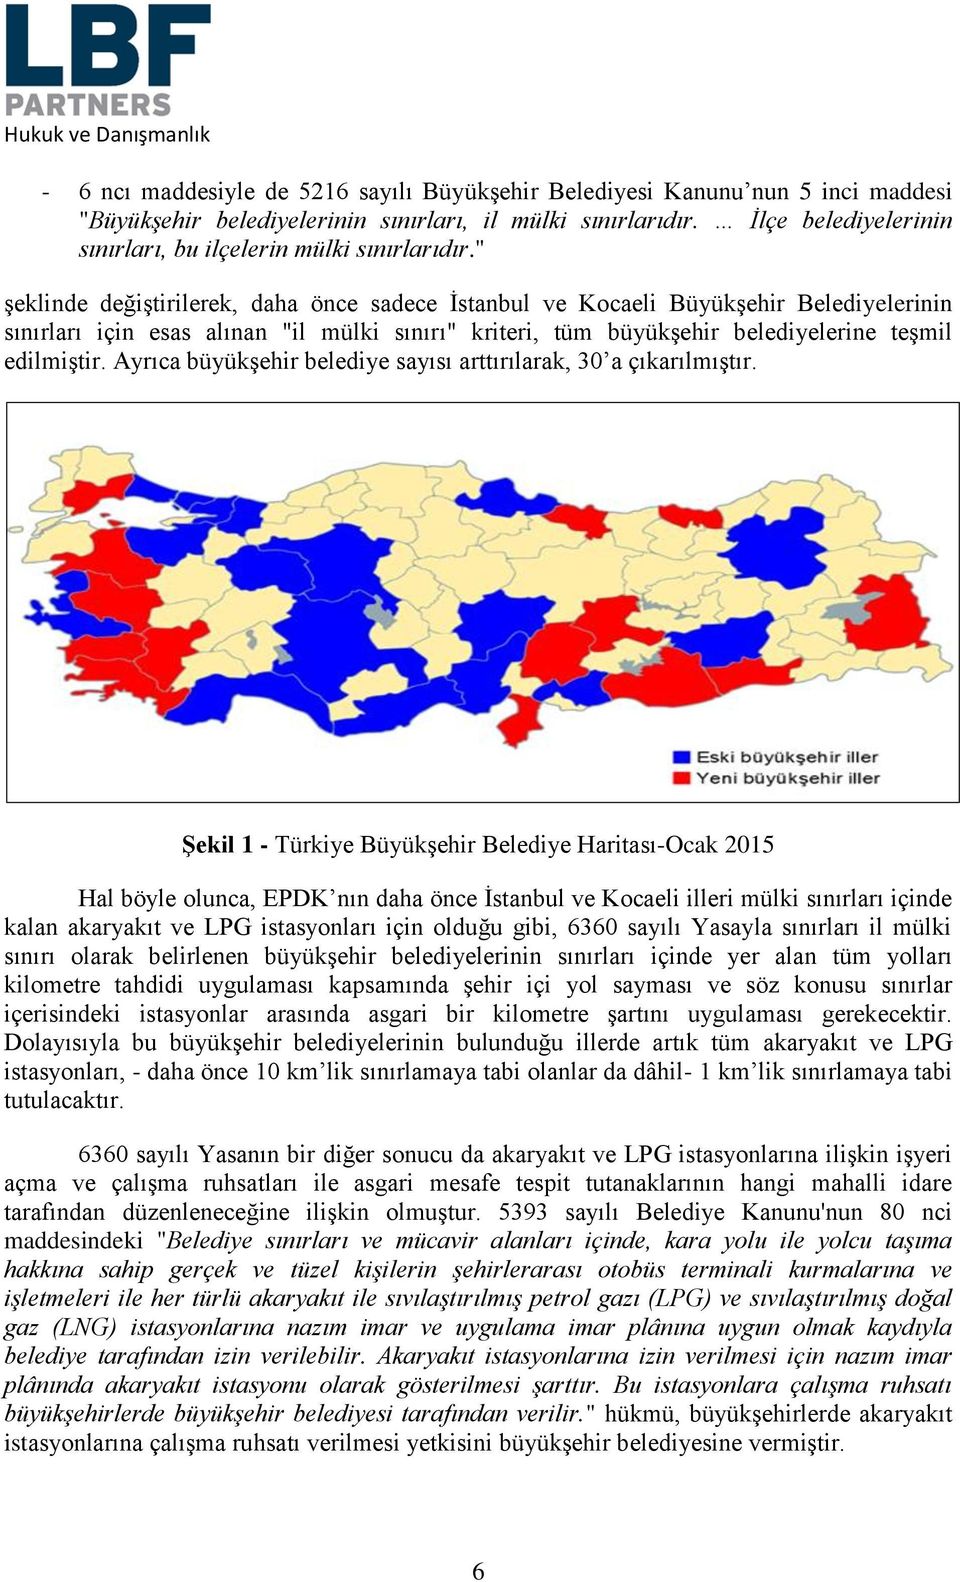 " şeklinde değiştirilerek, daha önce sadece İstanbul ve Kocaeli Büyükşehir Belediyelerinin sınırları için esas alınan "il mülki sınırı" kriteri, tüm büyükşehir belediyelerine teşmil edilmiştir.